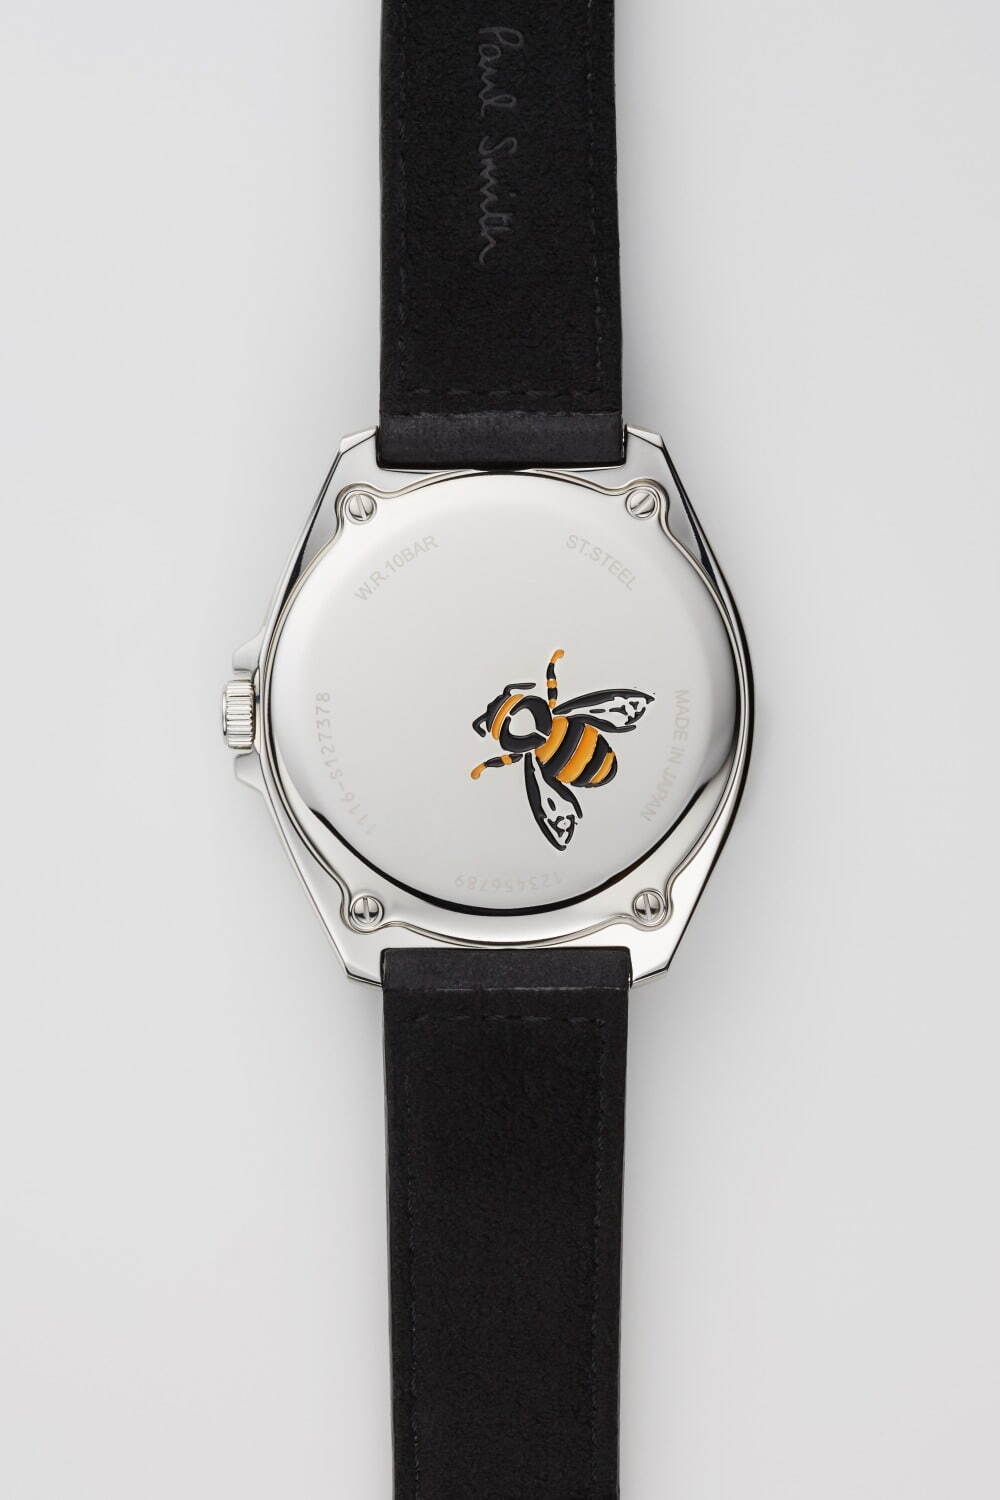 ポール・スミス「ランドローバー」着想の新作腕時計、ミリタリーカラー